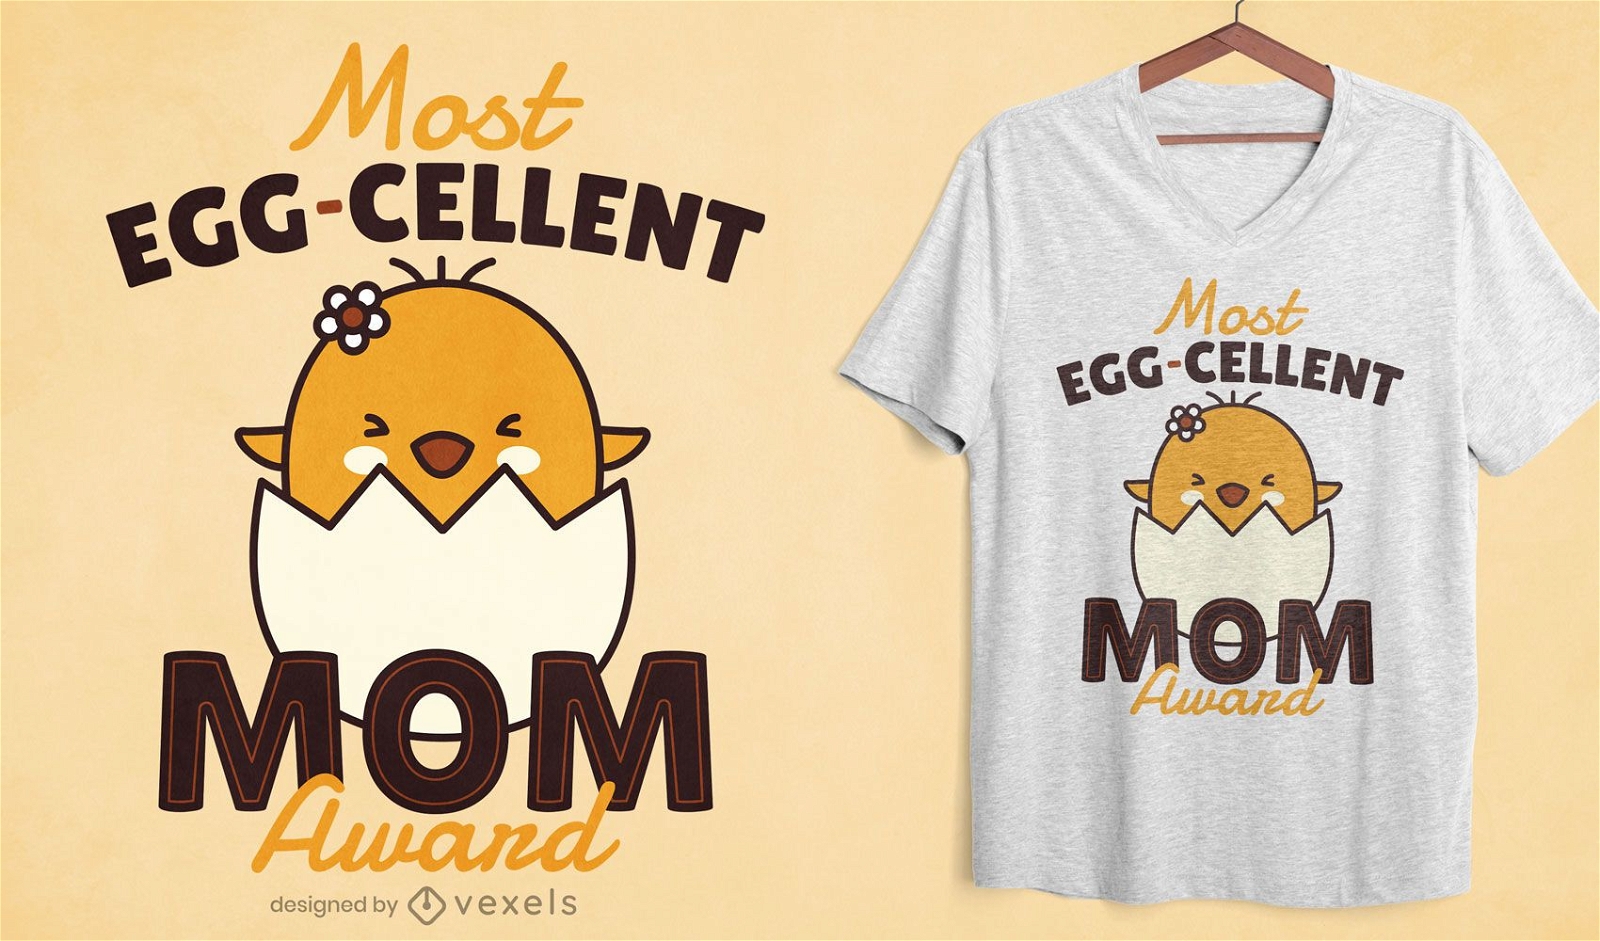 Most eggcelent mom t-shirt design